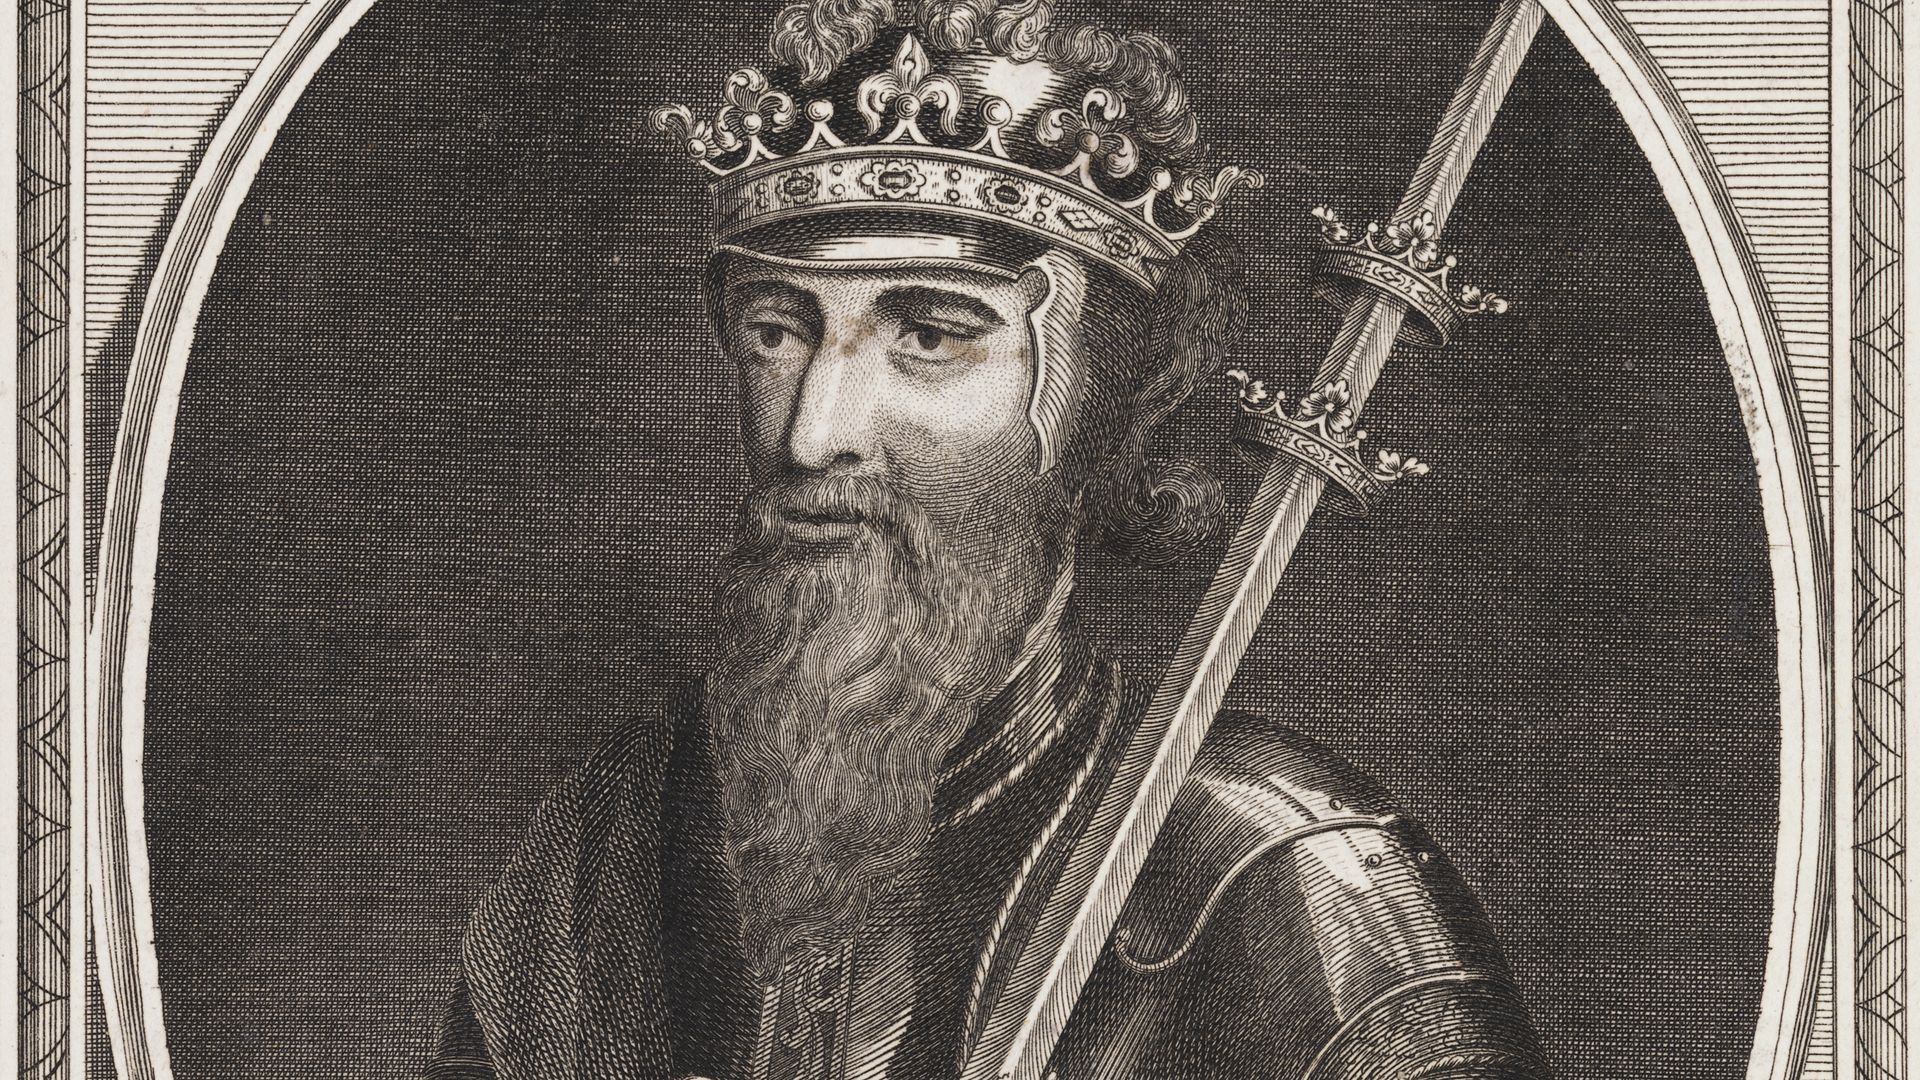 Engraving of King Edward III